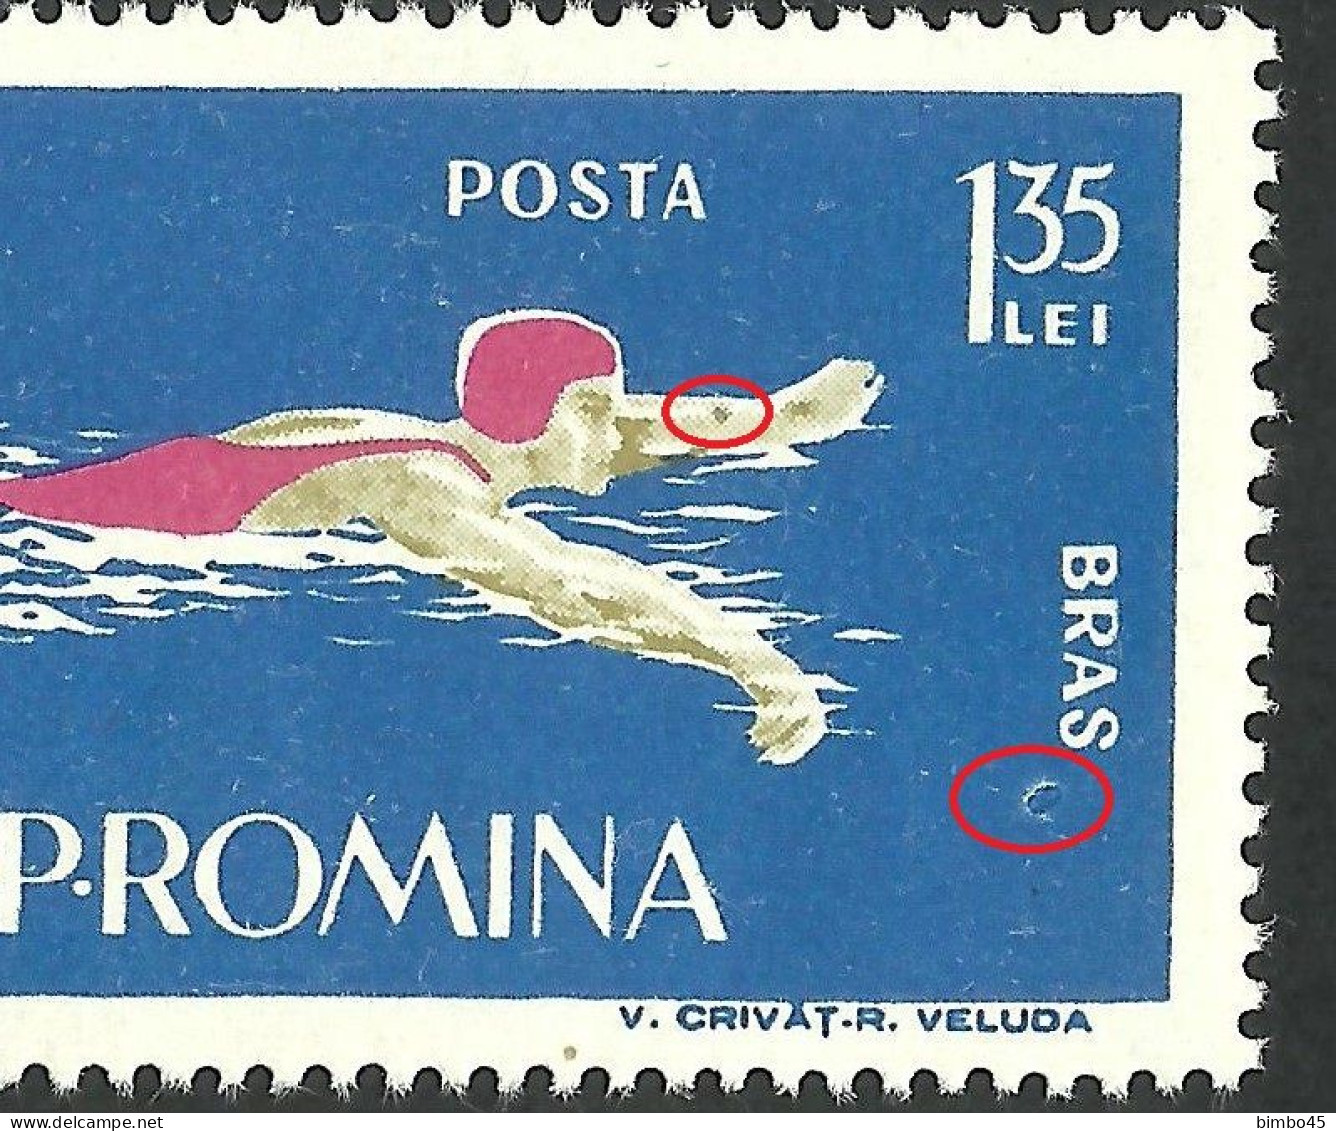 Error   Romania 1963  Sport - Swimming  Pair  MNH - Abarten Und Kuriositäten